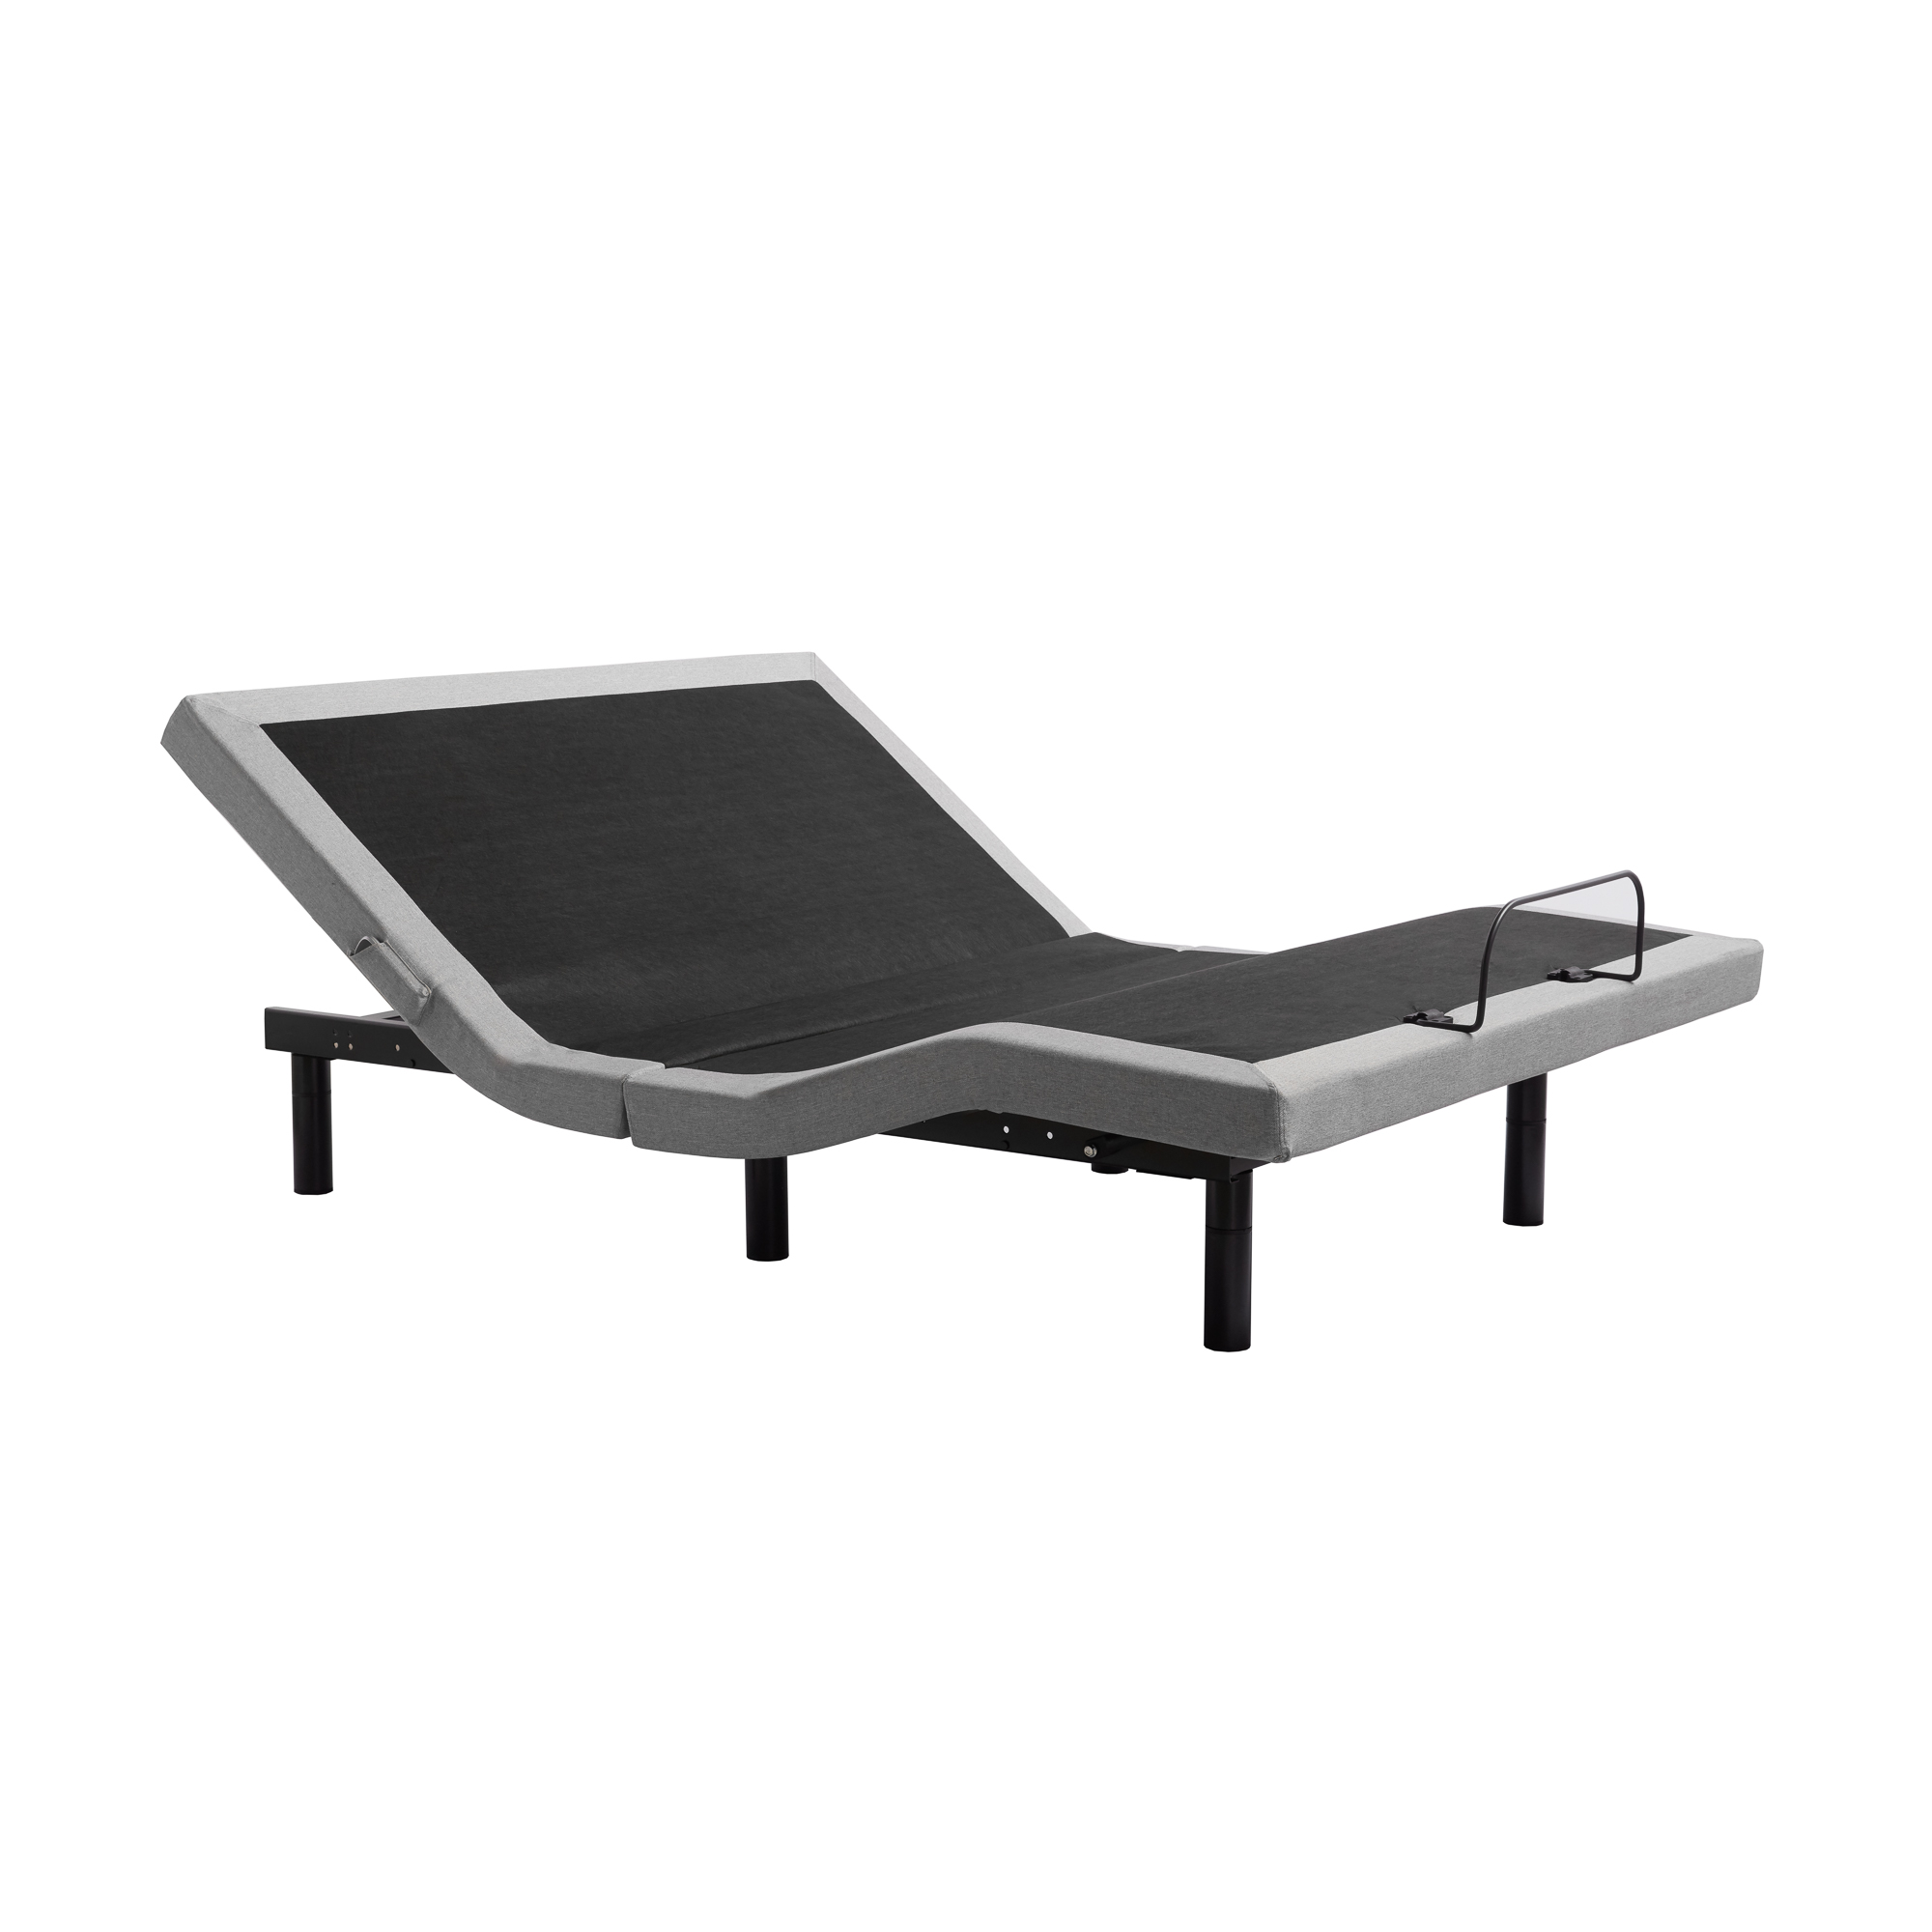 Structures E455 Adjustable Bed Base, Beautyrest Adjustable Bed Frame